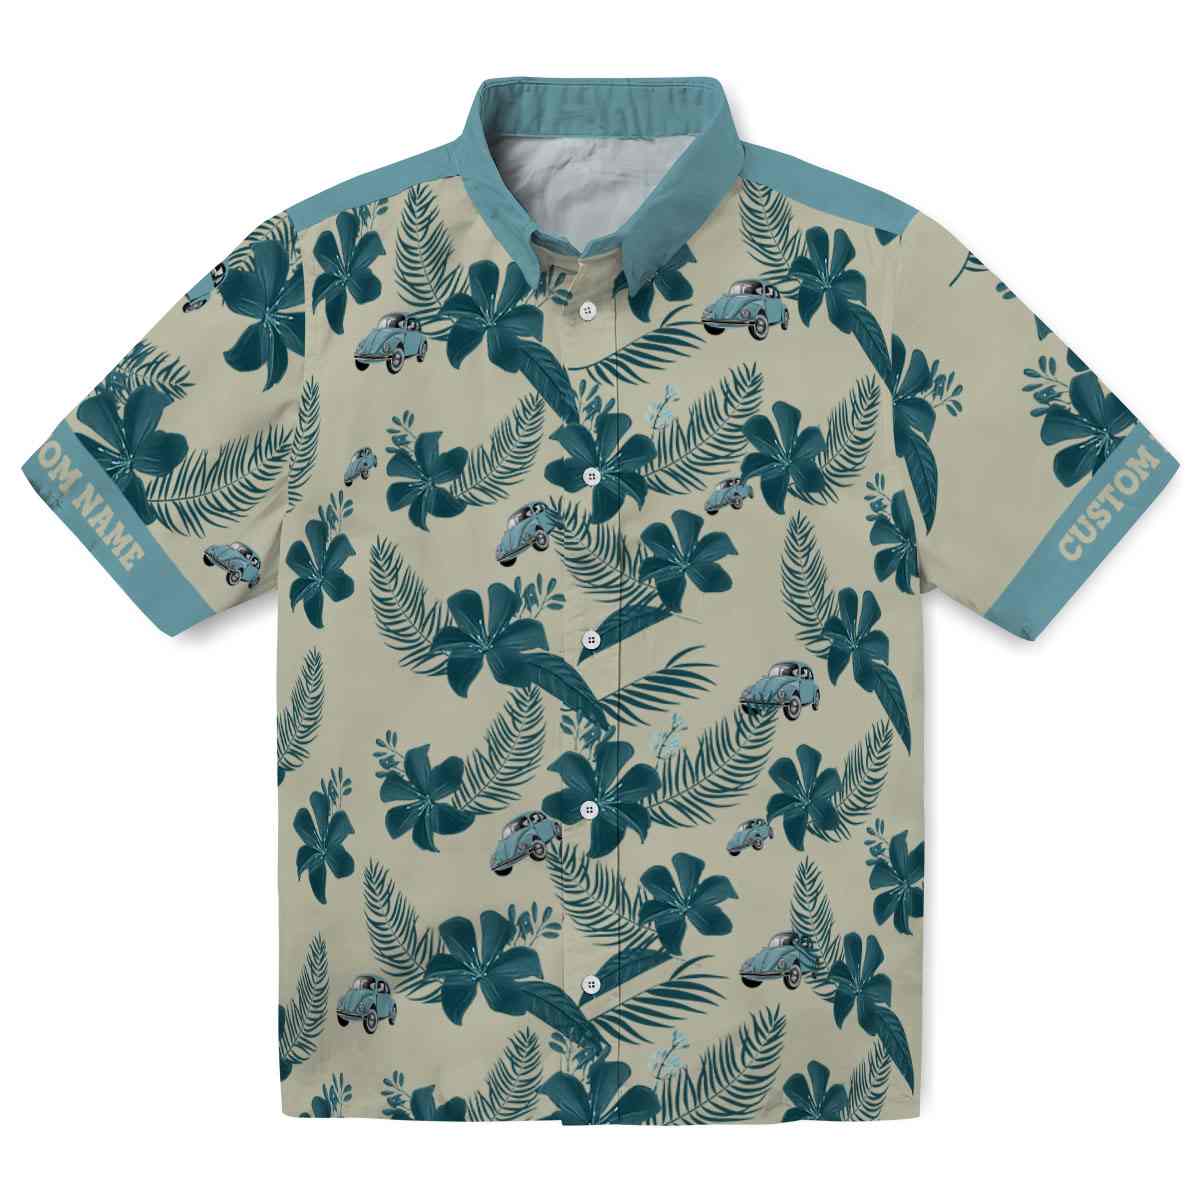 Car Botanical Print Hawaiian Shirt Best selling